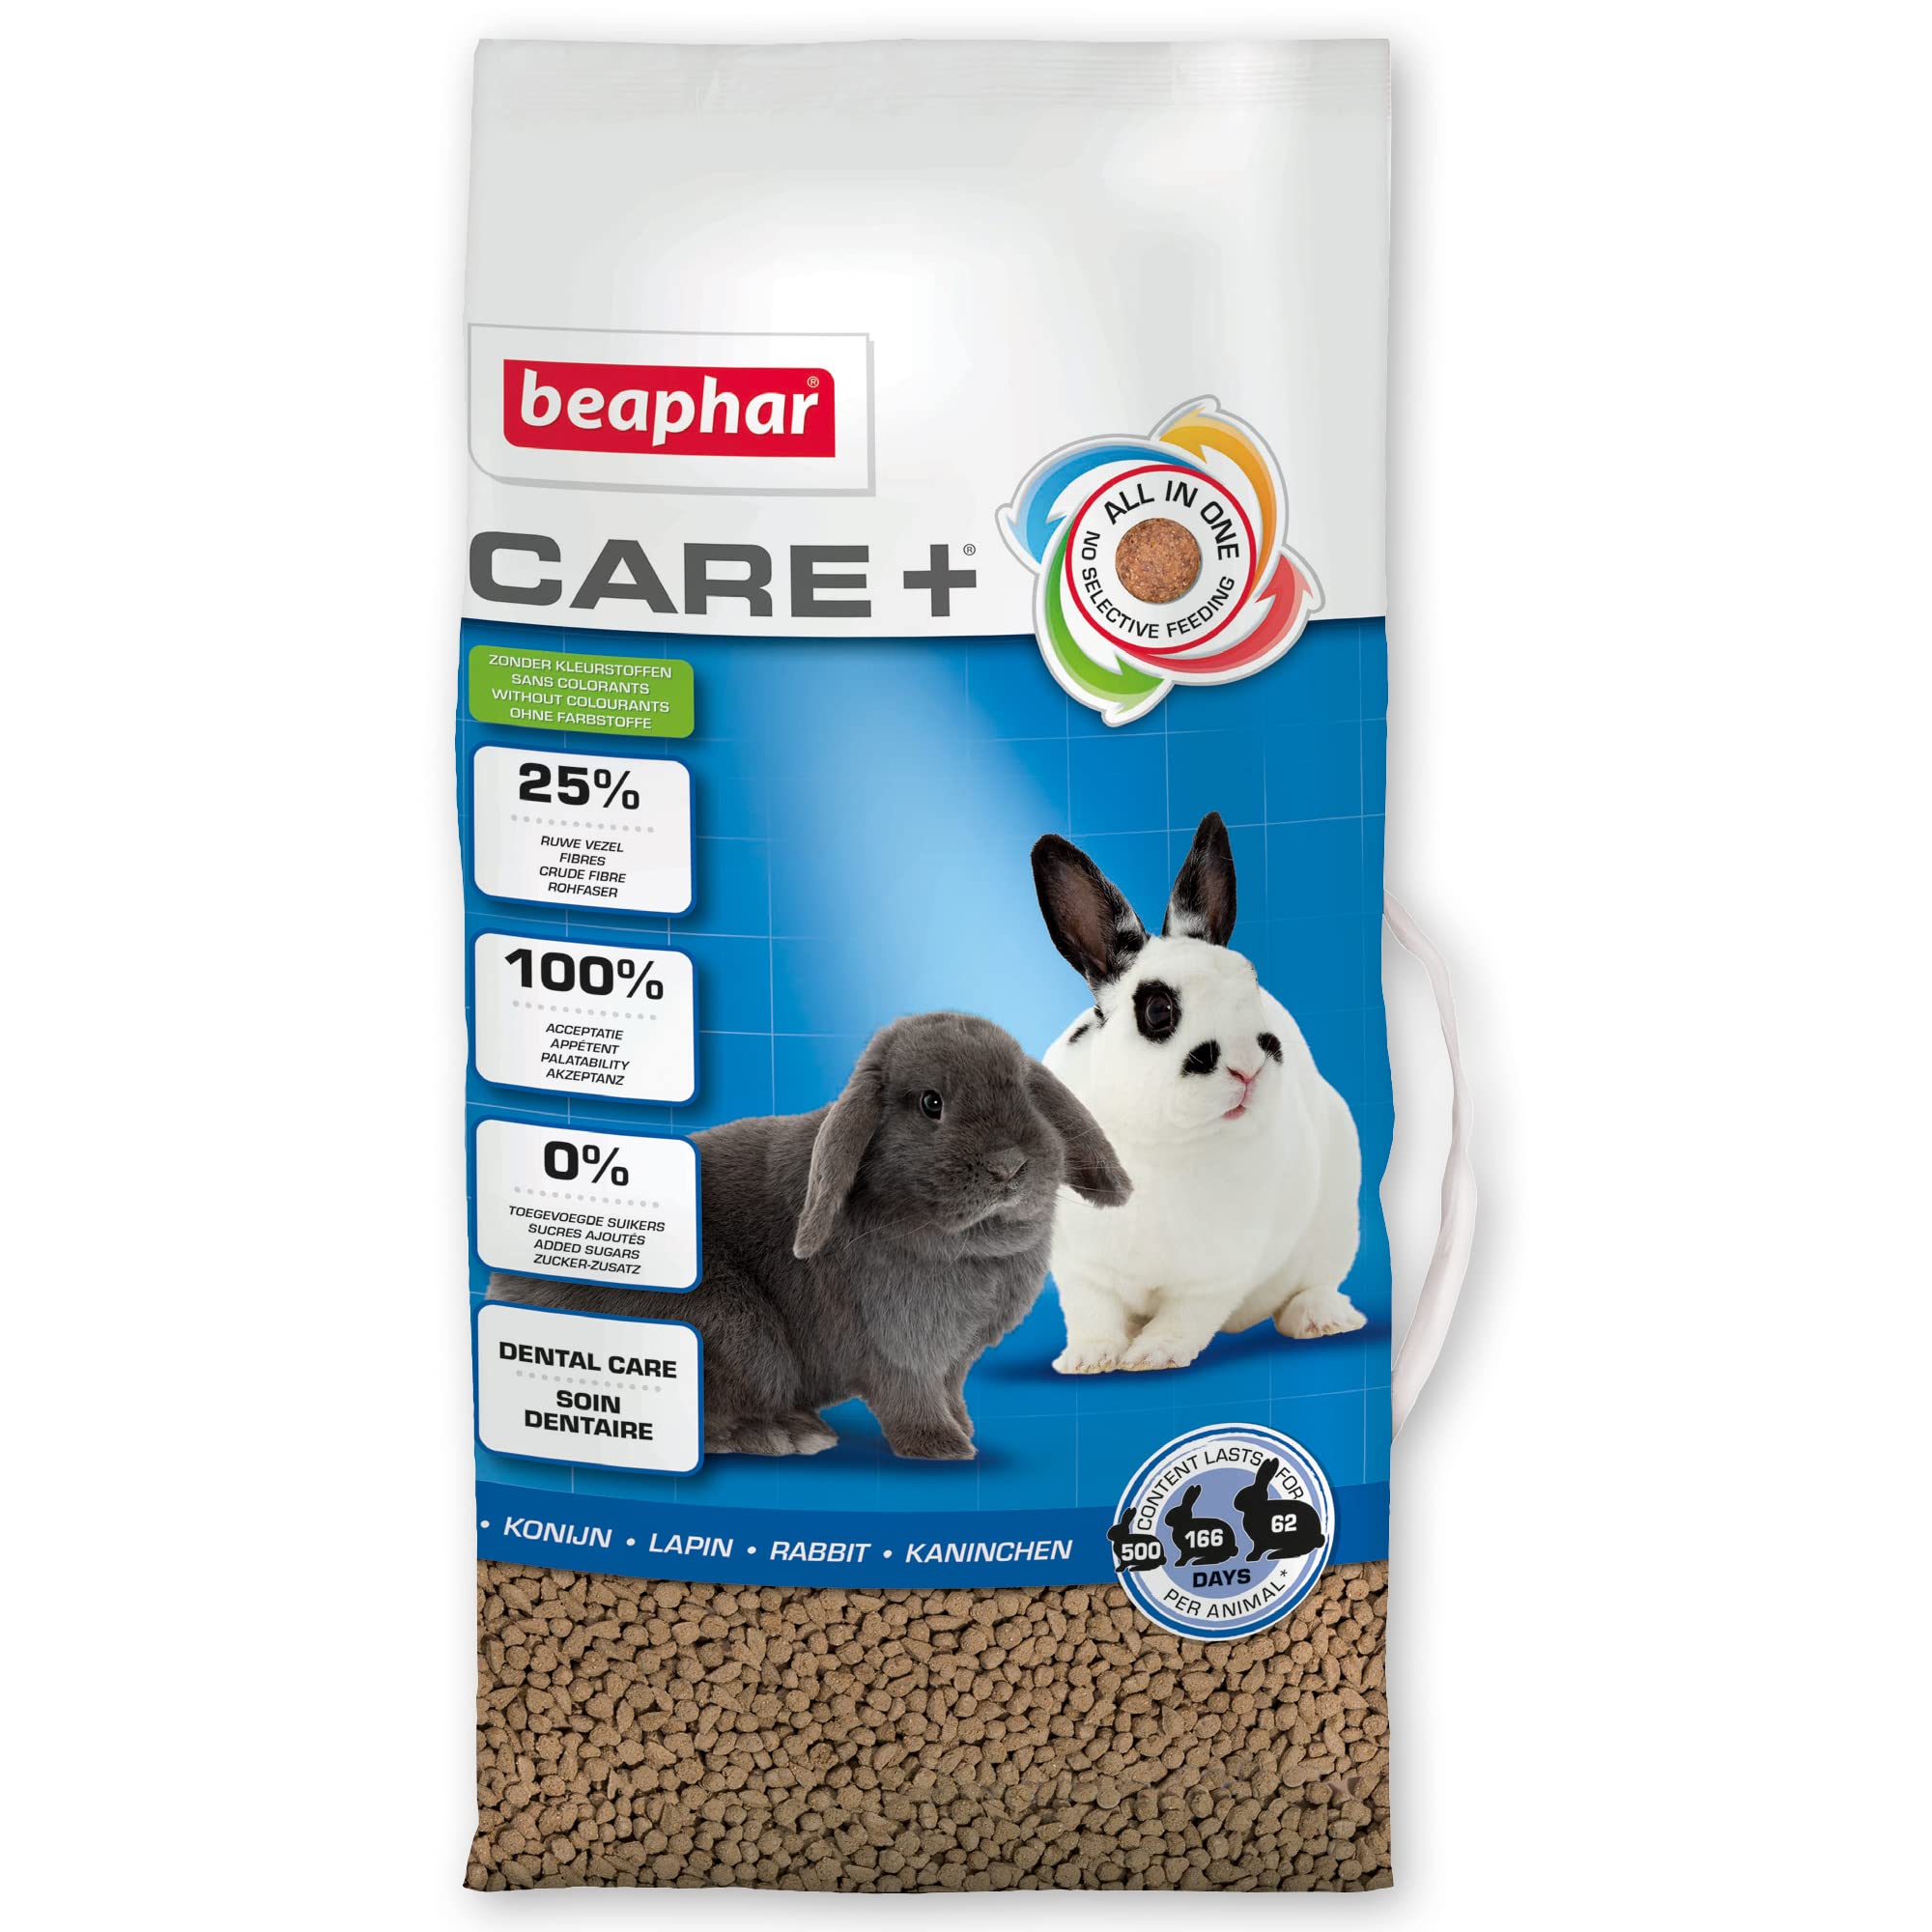 BEAPHAR - CARE+ - Super Prenium-Futter für extrudierte Kaninchen - 25% Ballaststoffe - Trägt zur natürlichen Abnutzung der Zähne bei - 5 kg